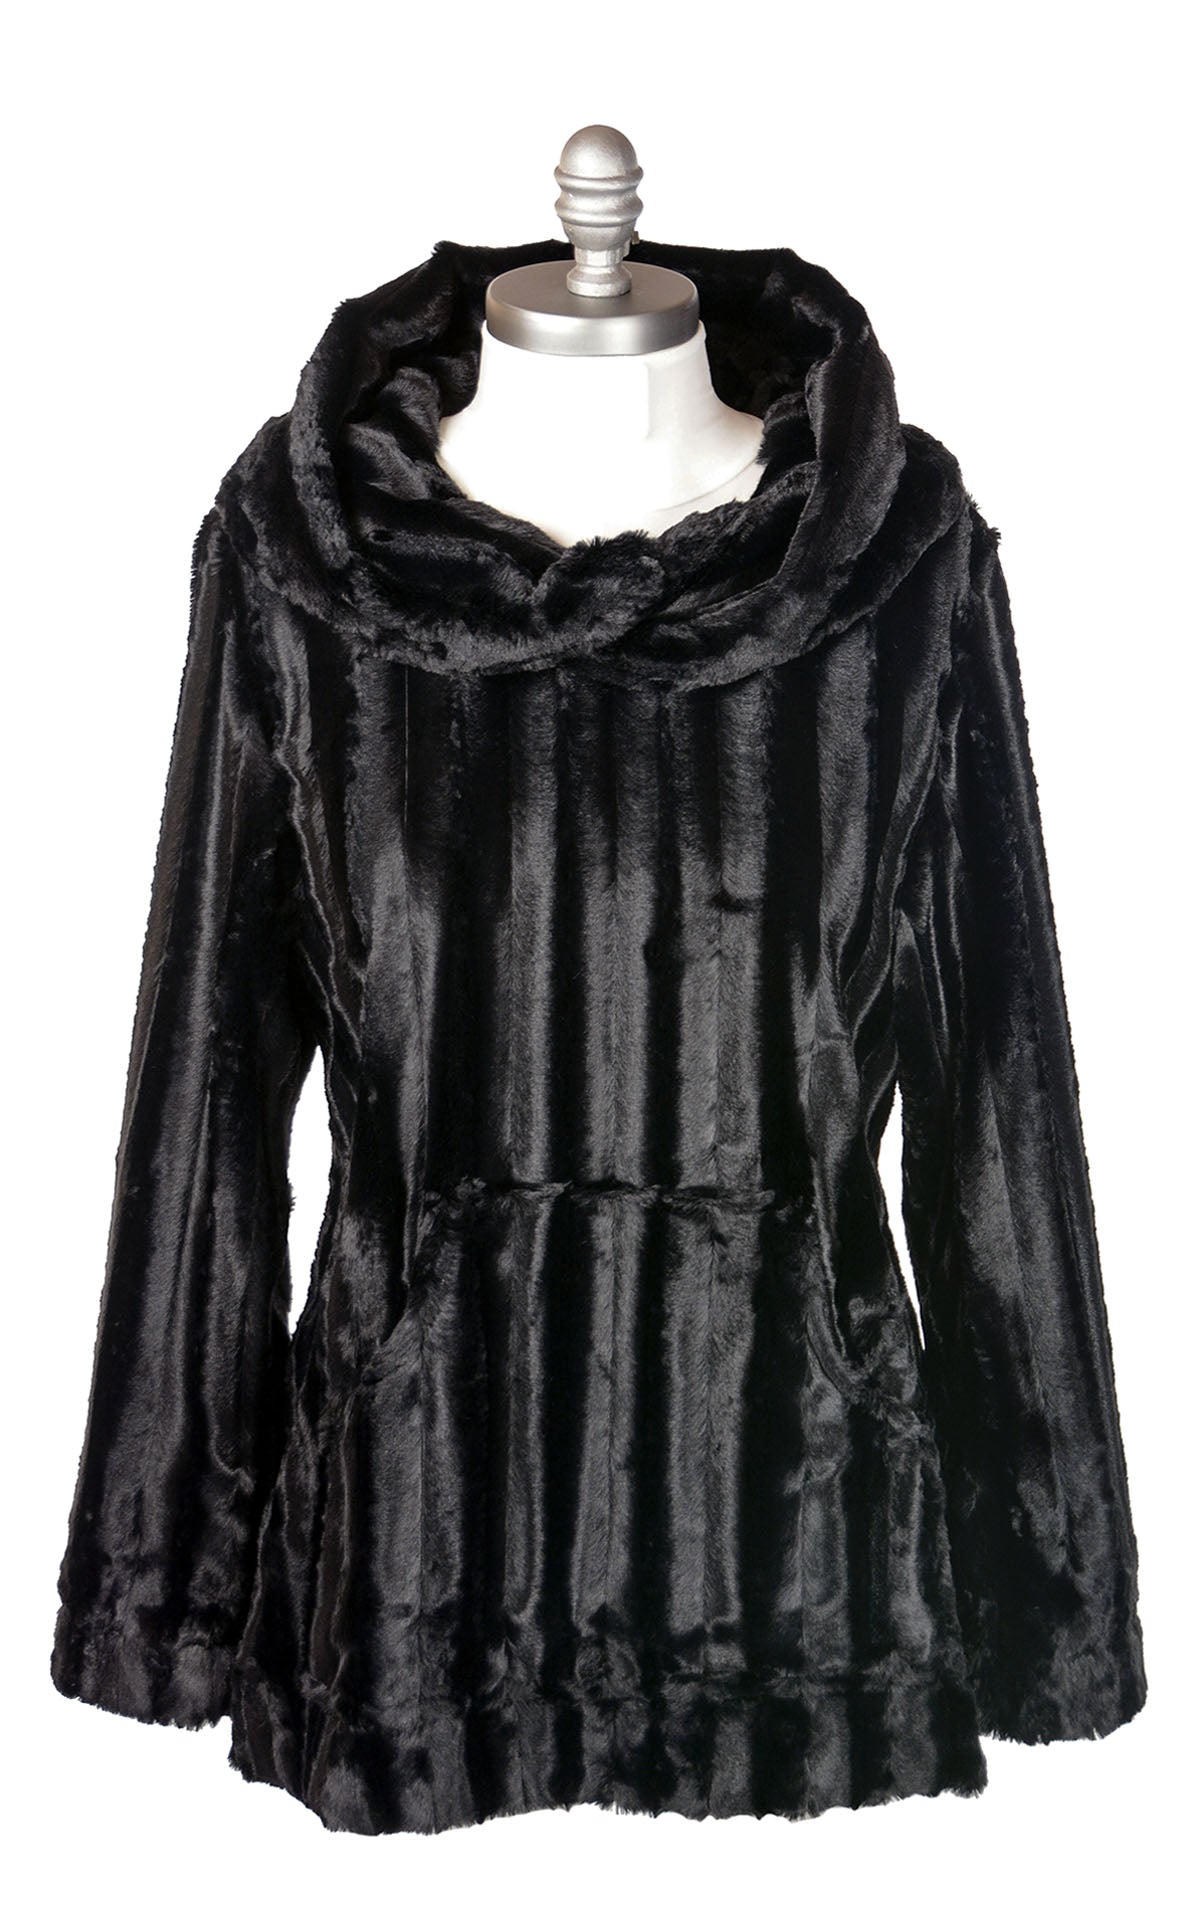 Hooded Lounger in Minky  Black Faux Fur  By Pandemonium Seattle.  Handmade in Seattle, WA USA.